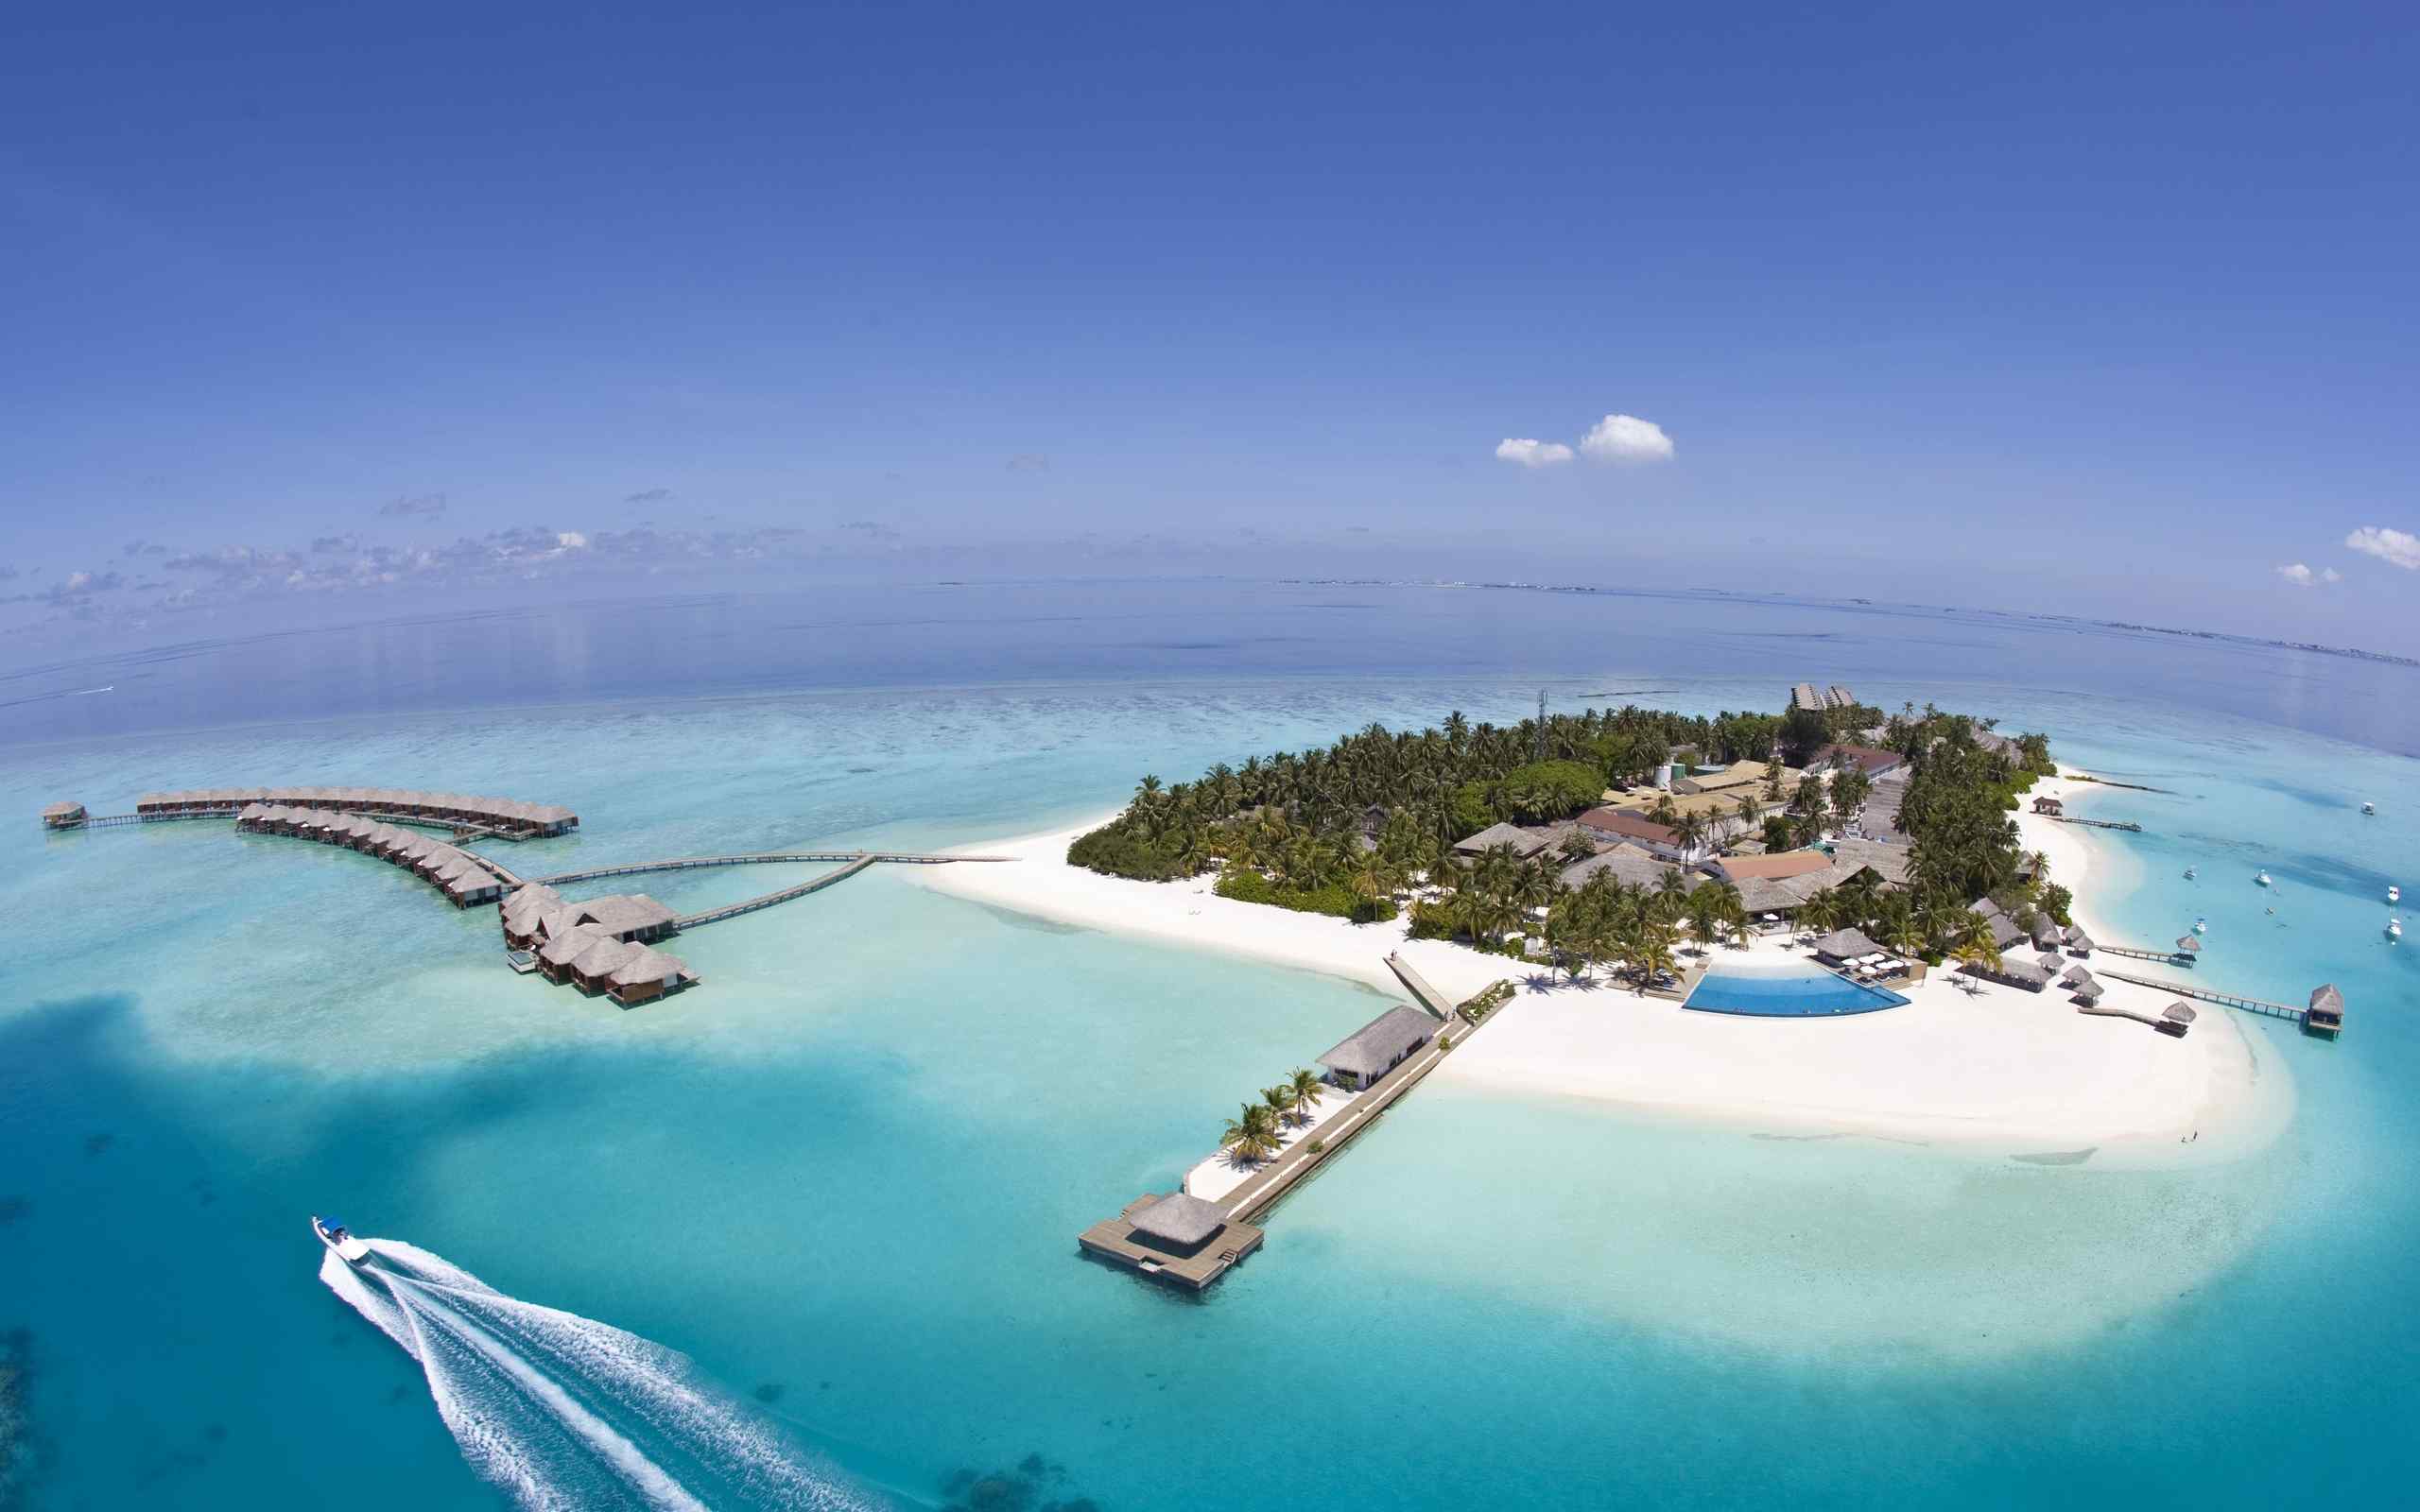 旅游圣地马尔代夫海岛风景高清壁纸